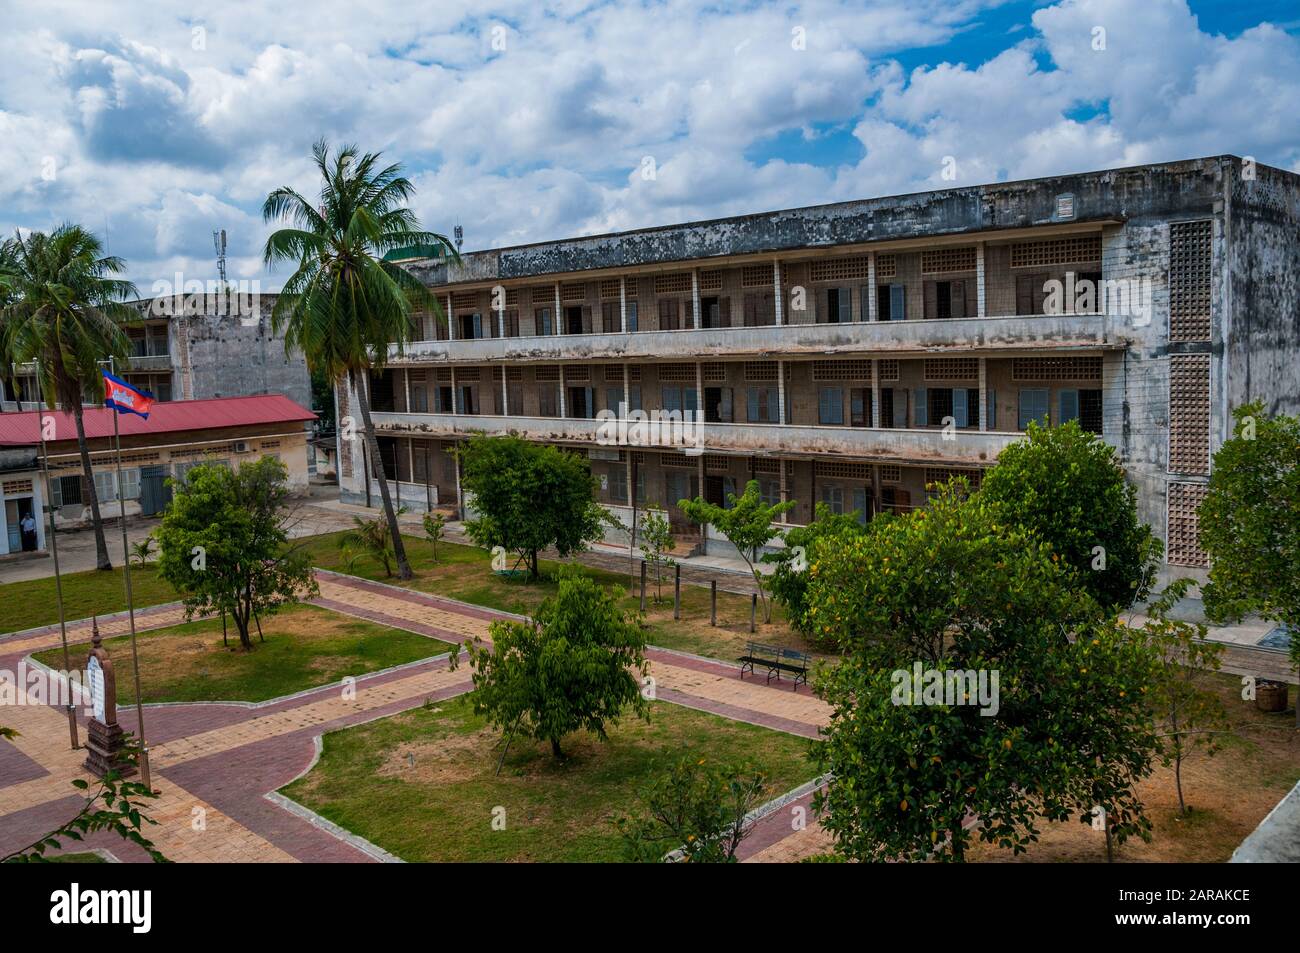 Les anciennes salles de classe utilisées comme cellules pour la détention et la torture à des ennemis supposés du régime des Khmers rouges. Prison S-21 à Phnom Penh, Cambodge. Banque D'Images